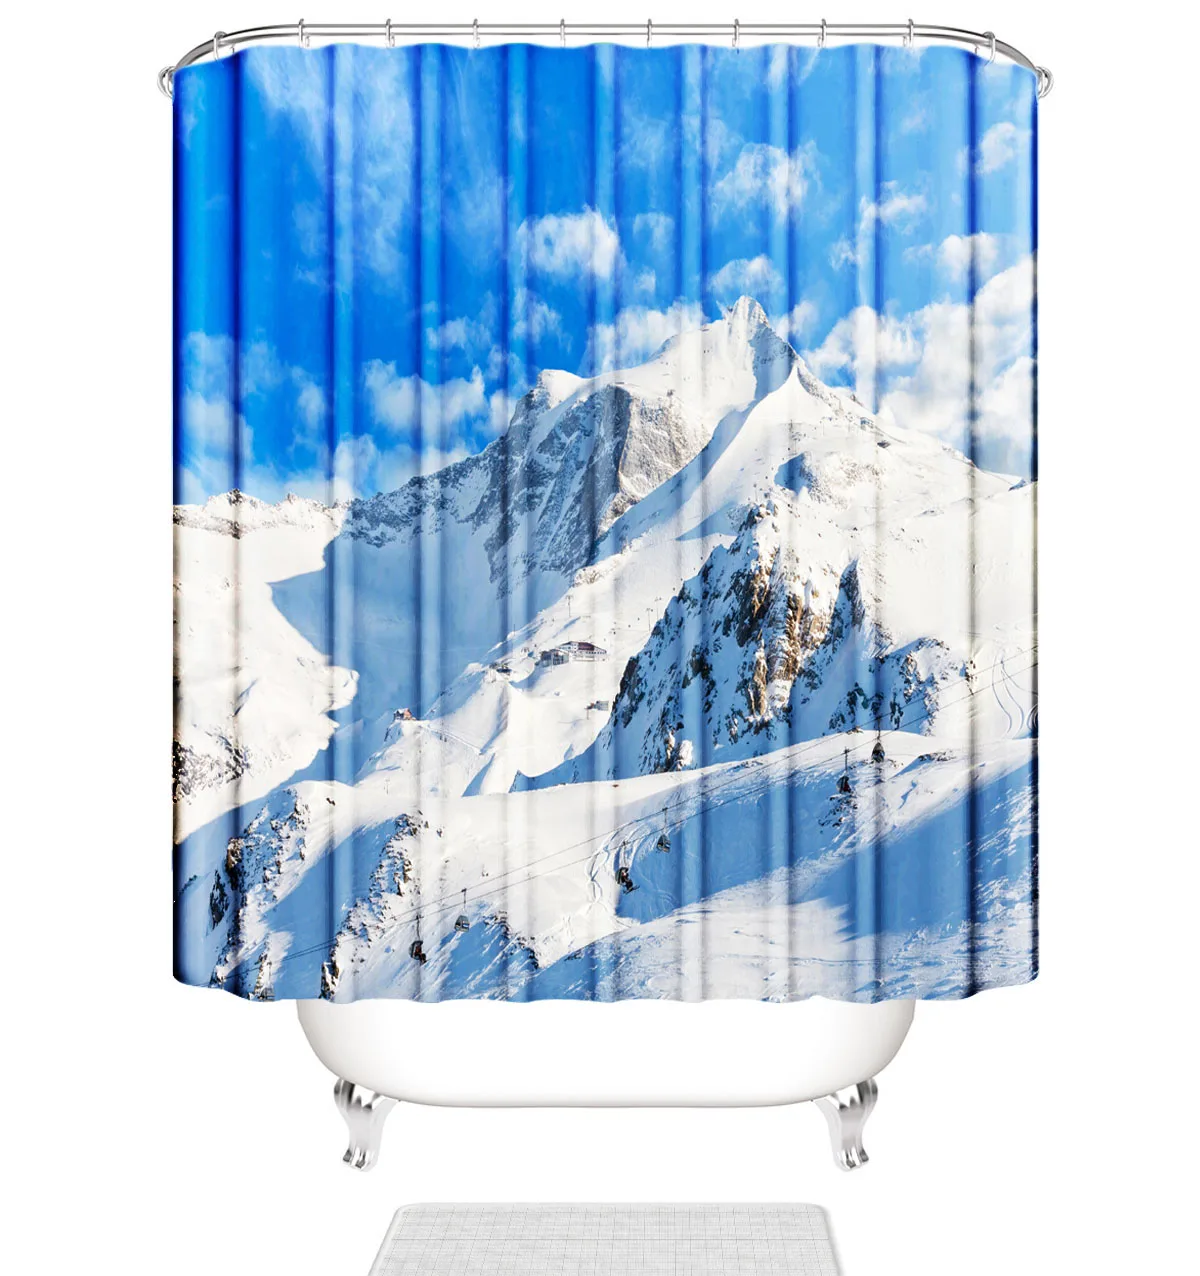 

Занавеска для ванной snow mountain, занавеска для душа с голубым небом, водонепроницаемая занавеска из полиэстера, занавеска для ванной комнаты